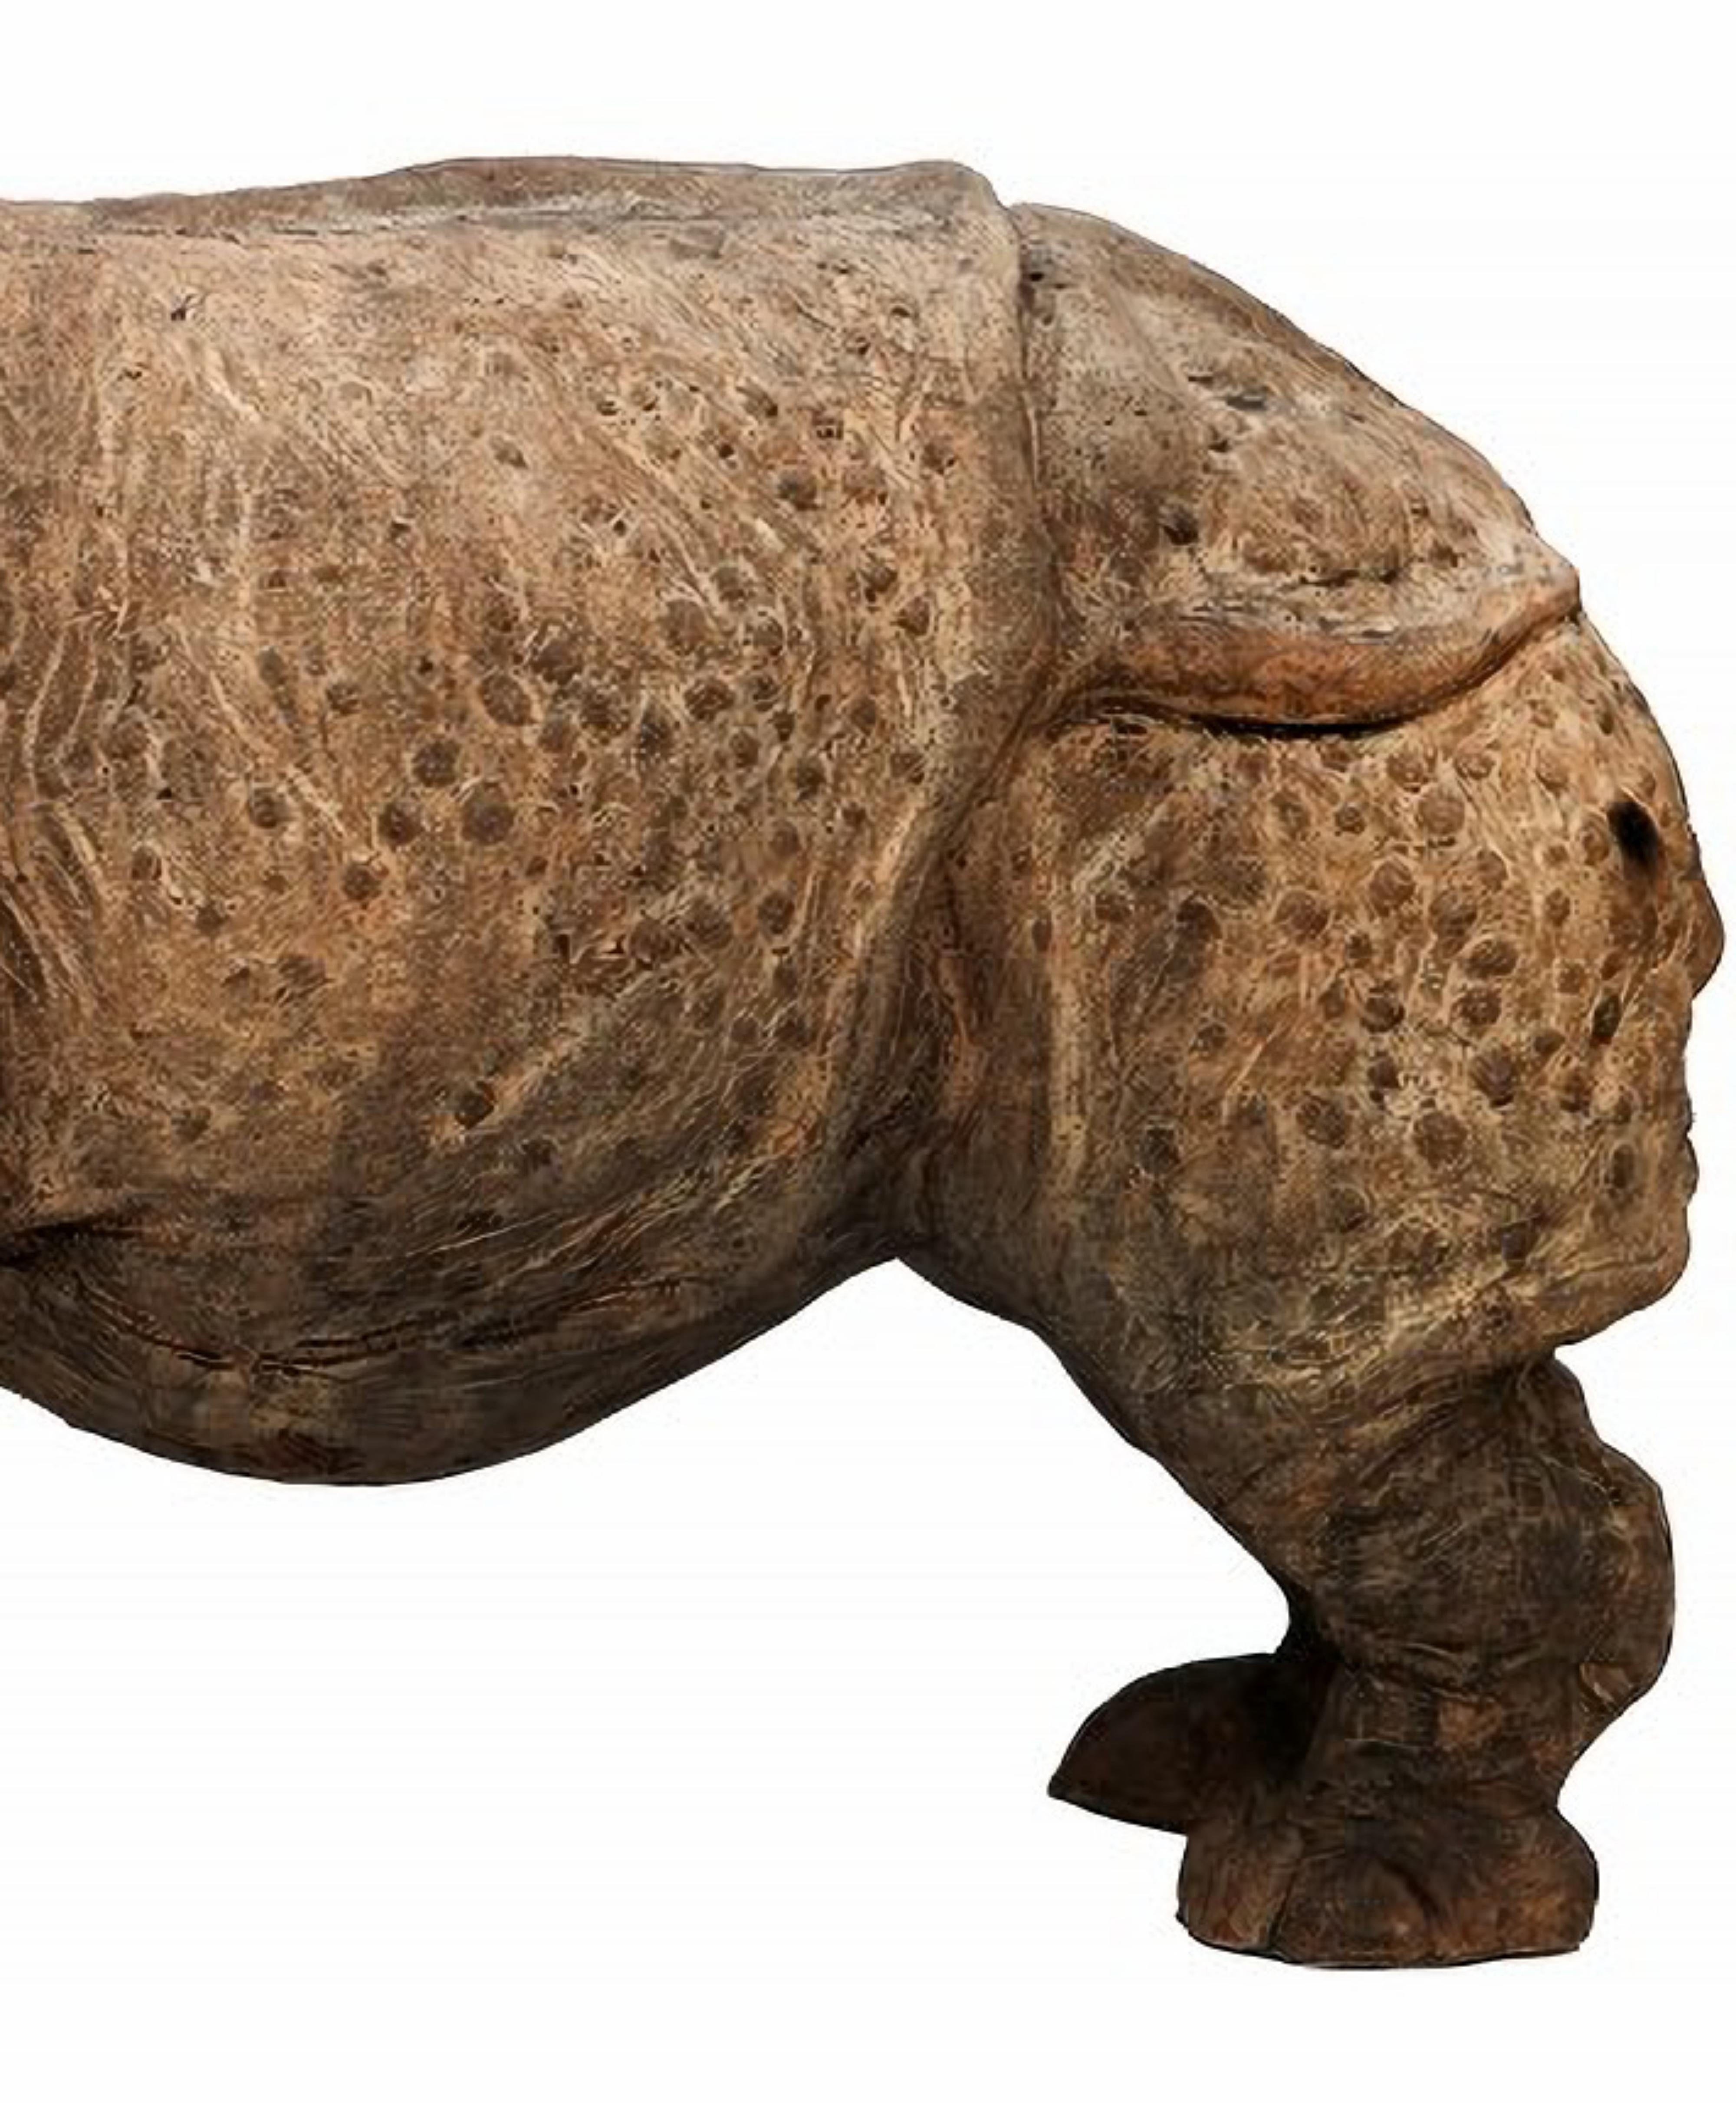 LA TUSCANE INDIENNE TERRACOTTA RHINO DE L'ASSAM 20e siècle
Florence - Italie
Rhinocéros indien typique de l'Assam.
HAUTEUR 35 cm
LARGEUR 27 cm
LONGUEUR 37 cm
POIDS 15 Kg
MATERIAL Terre cuite